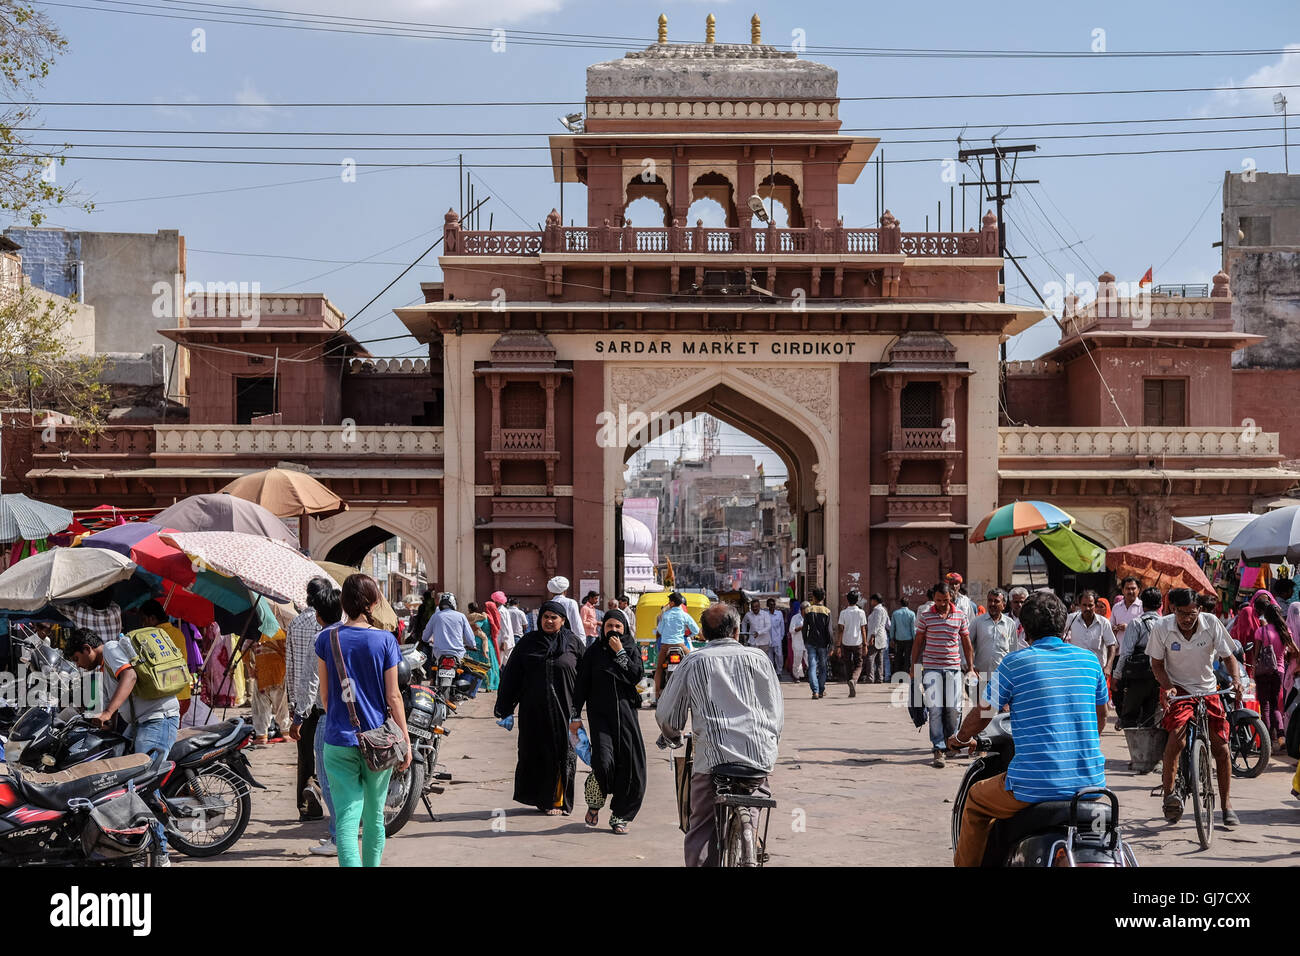 Sardar market gate in Jodhpur Stock Photo